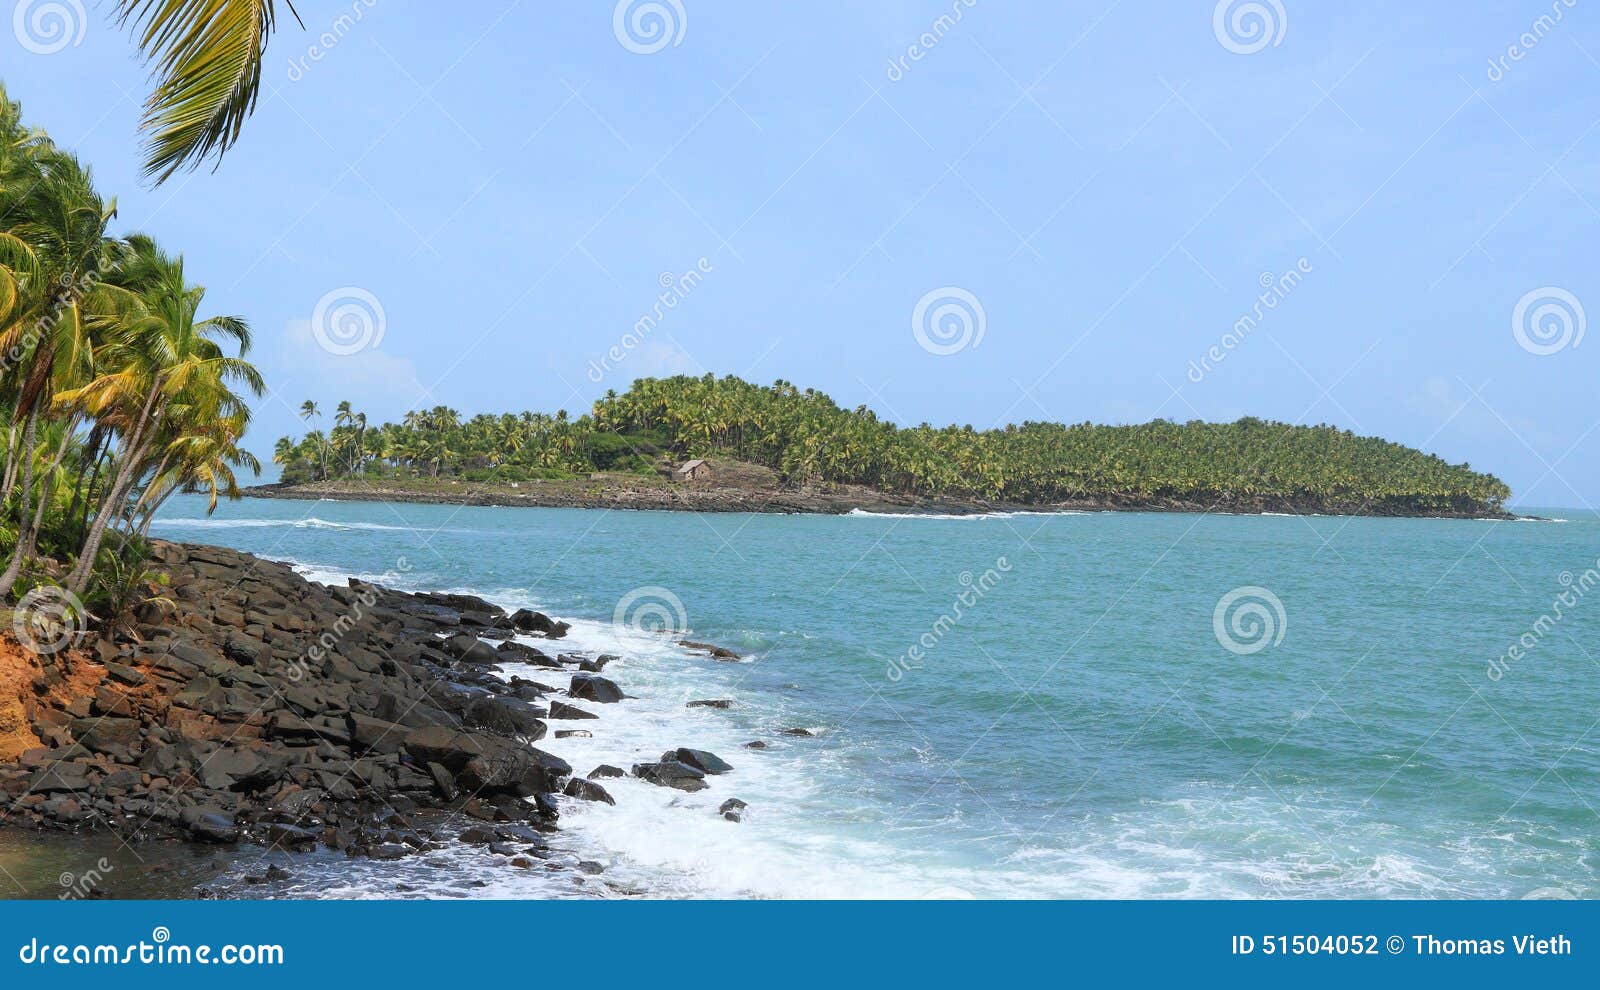 Devil Island French Guiana Stock Photos - Free & Royalty-Free